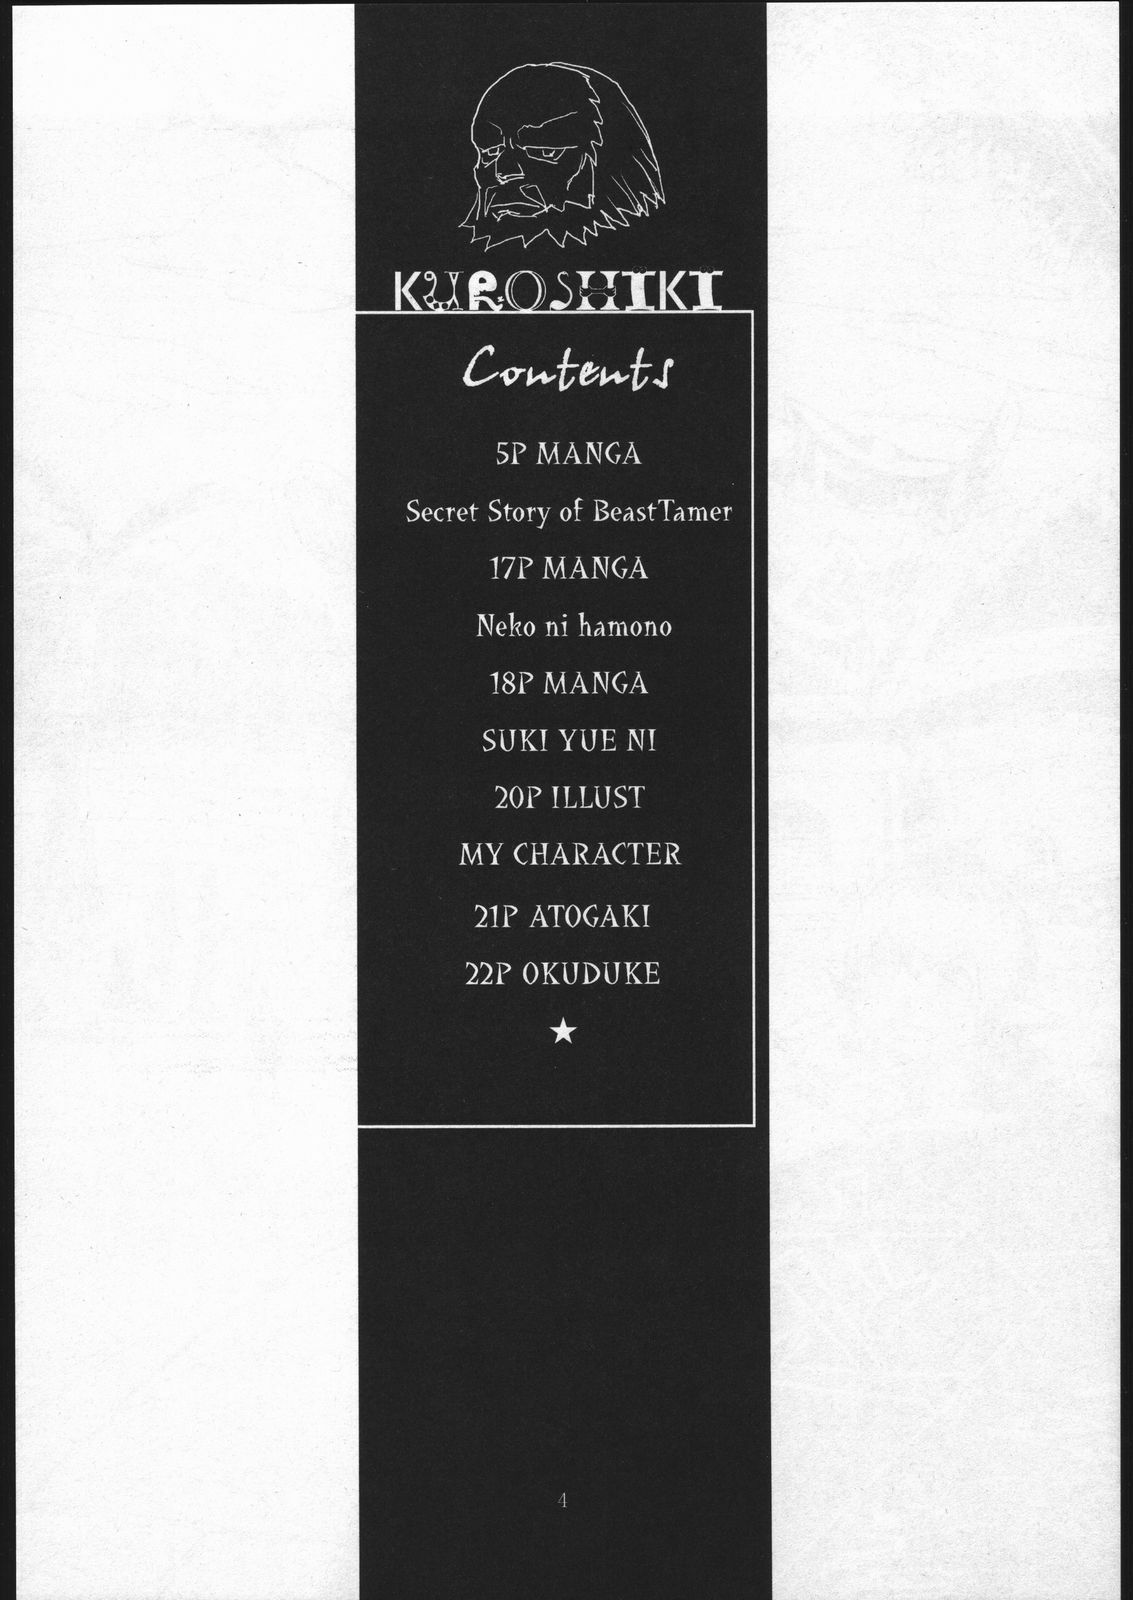 [Kuroshiki (Kurohiko)] Kuroshiki Vol. 1 (Final Fantasy XI) page 3 full